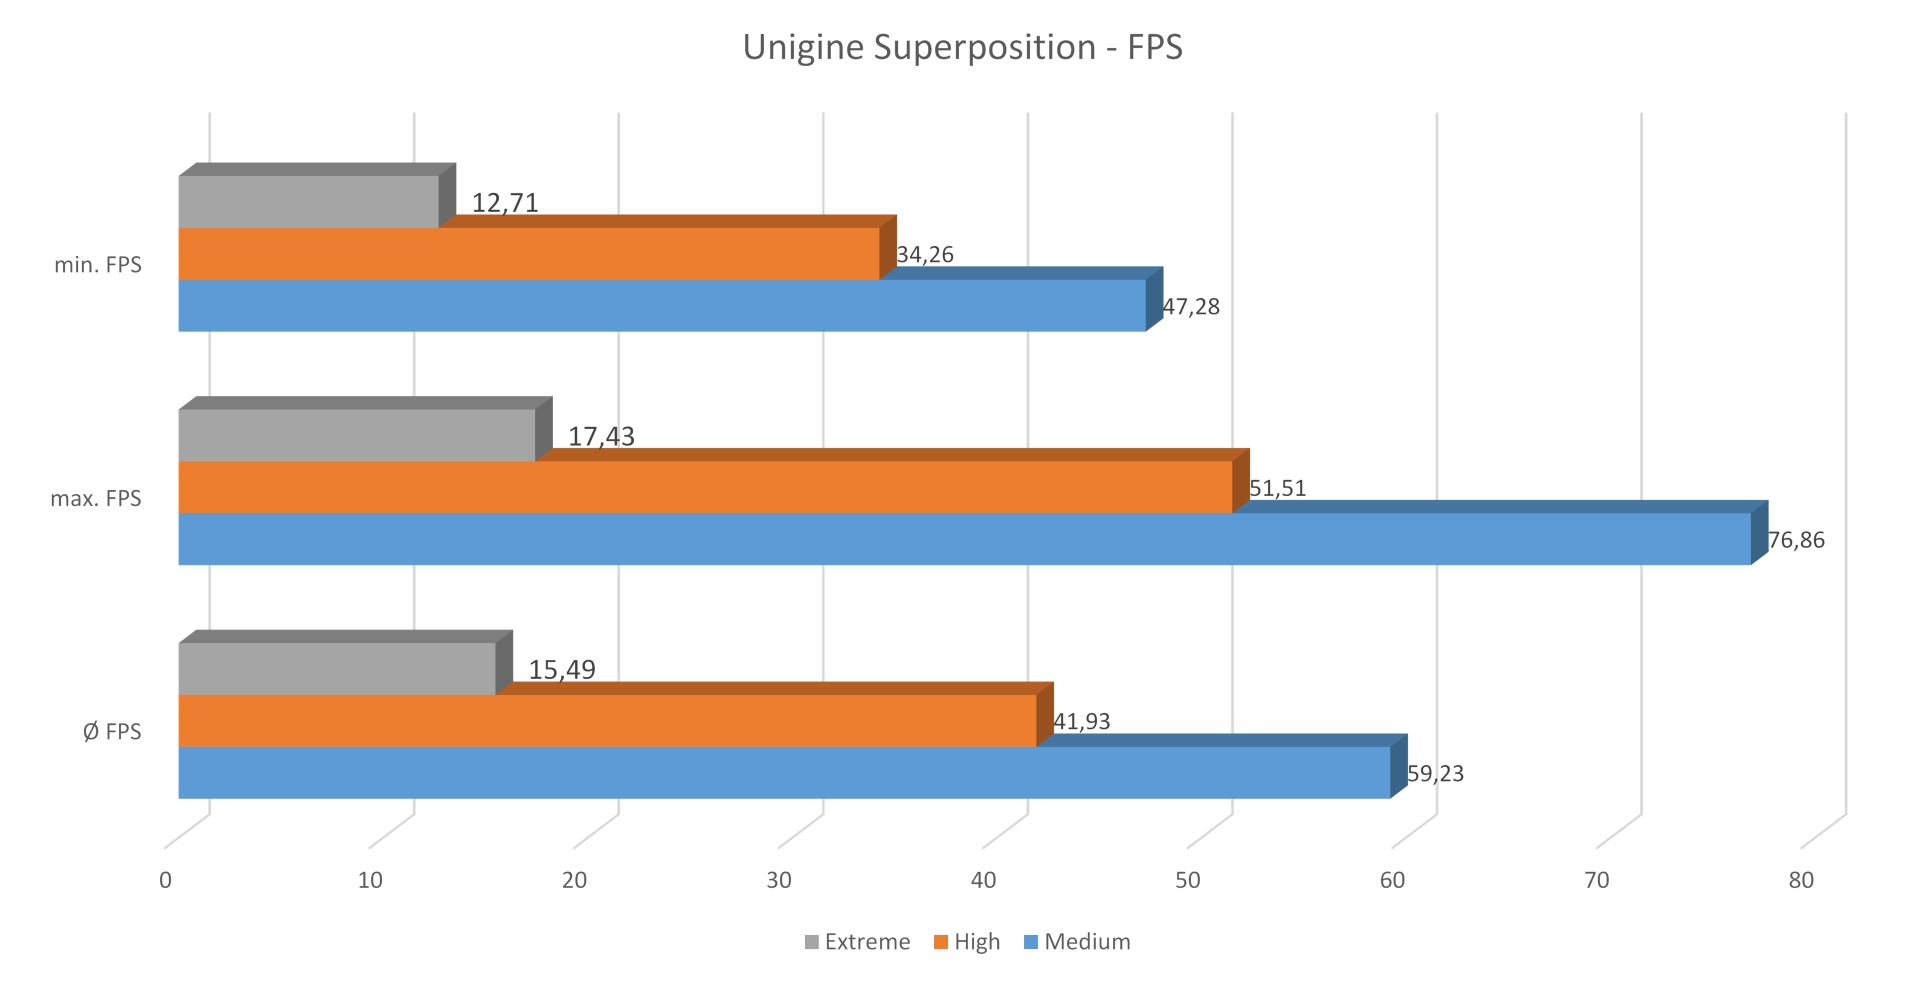 ASUS TUF FX505 Gaming - Unigine Superposition FPS